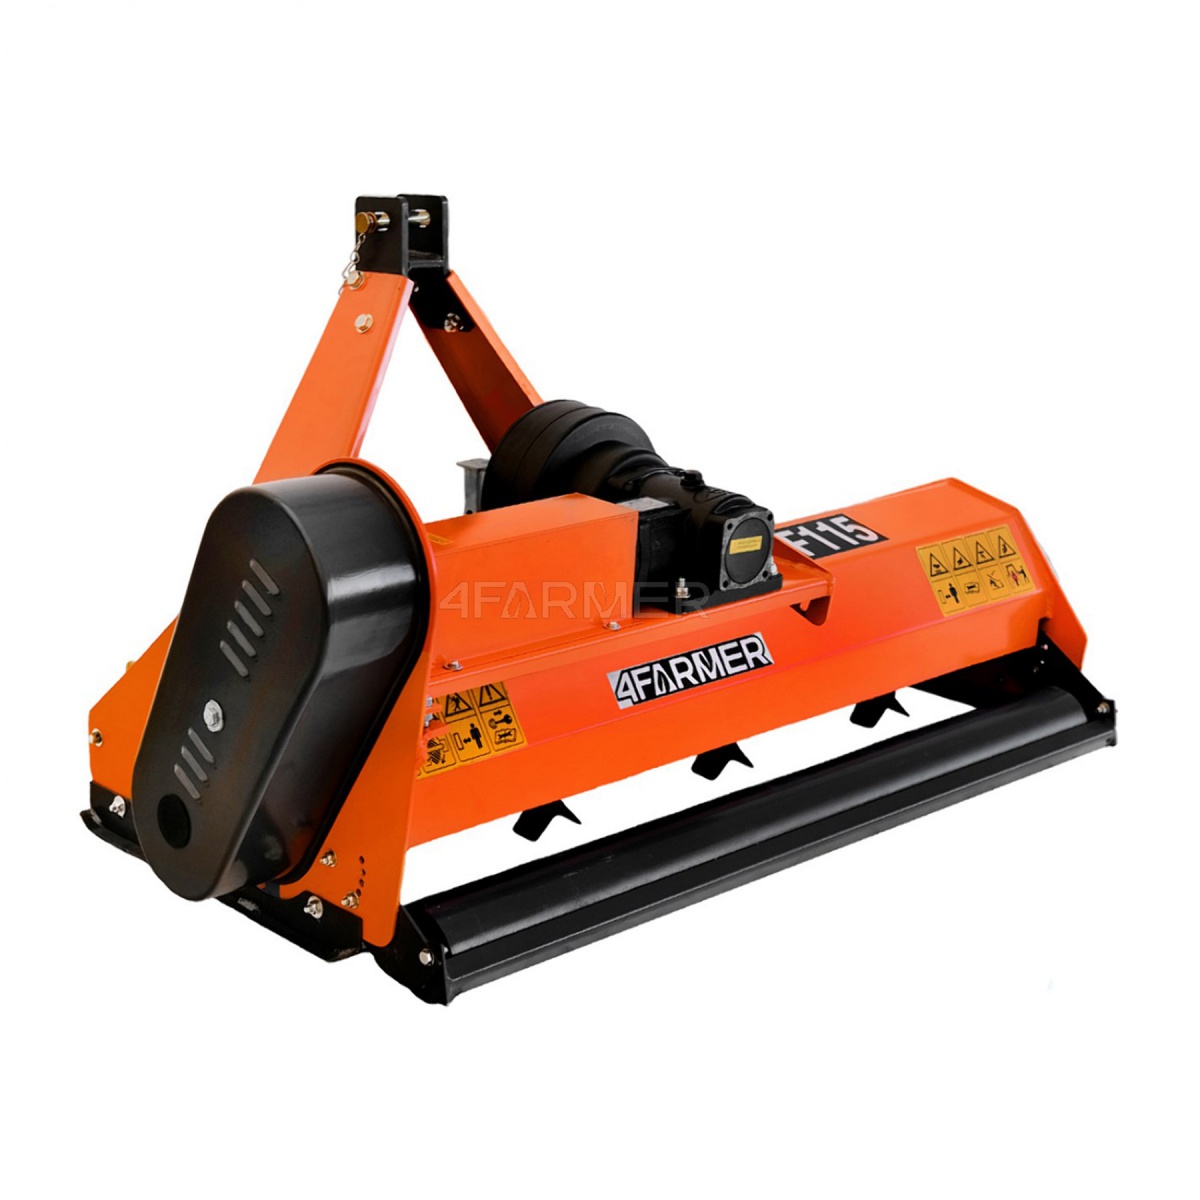 flail movers - Flail mower EF 145 4FARMER - orange